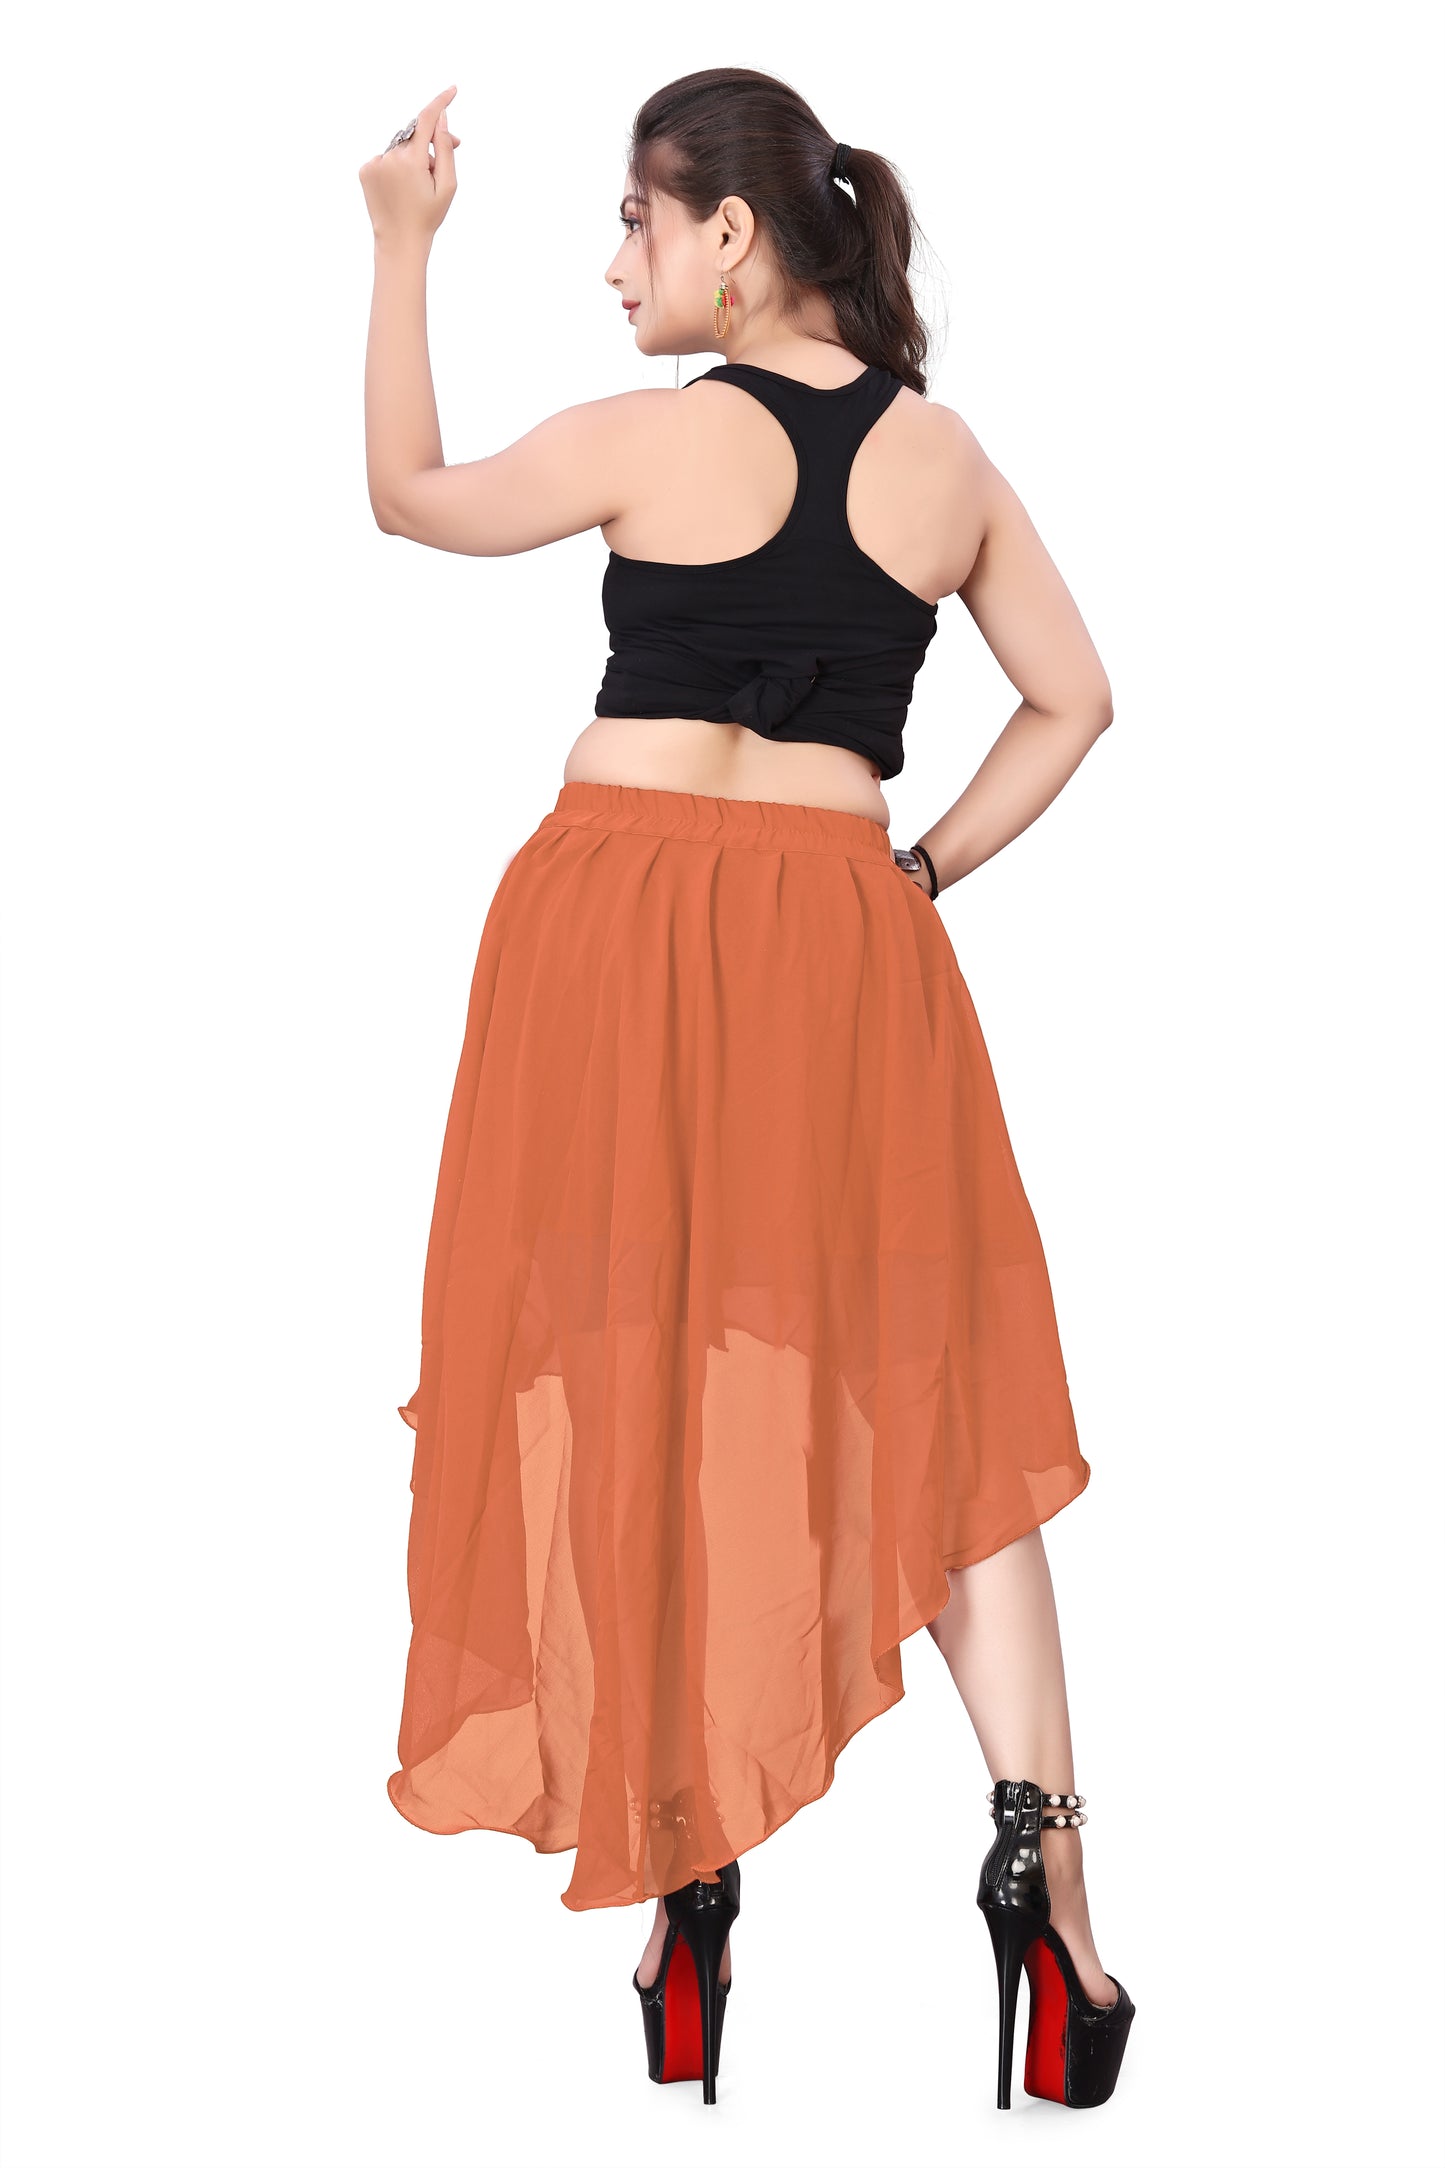 Chiffon Asymmetrical skirt Belly Dance Skirt C9- Regular Size 1